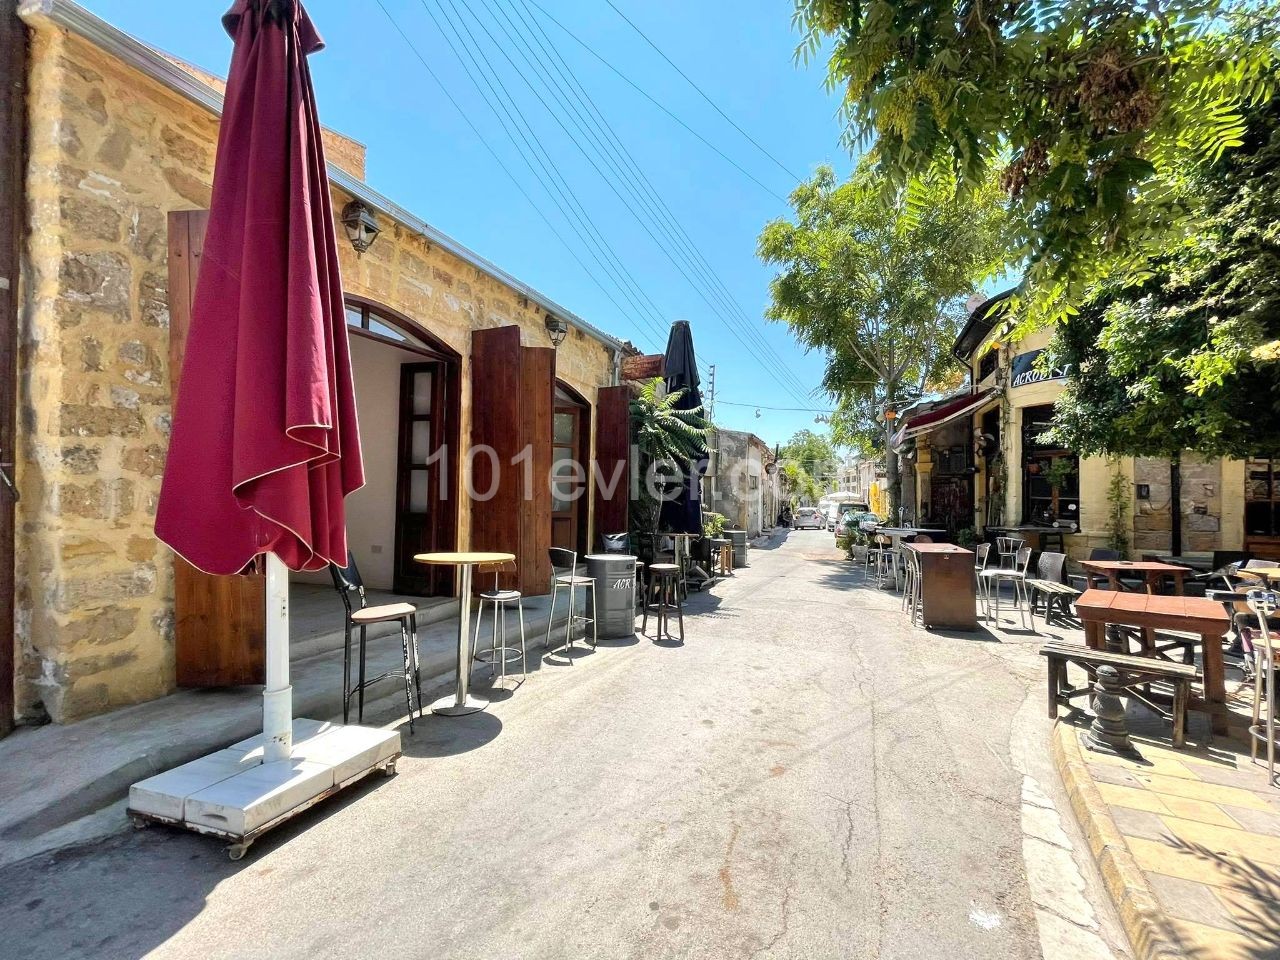 یک مغازه برای اجاره درست در کنار Bandabulya و Bedesten در نیکوزیا Surlariçi، در دسترس برای یک بار و کافه!